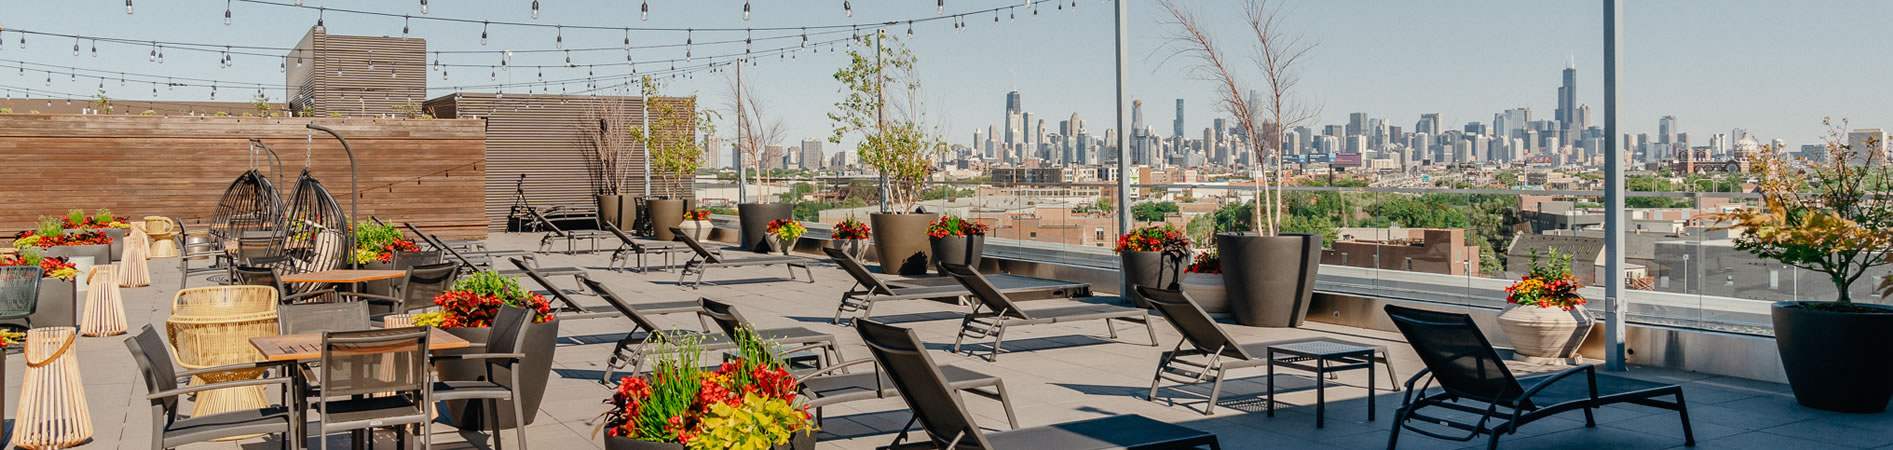 best rooftop bar in bucktown chicago